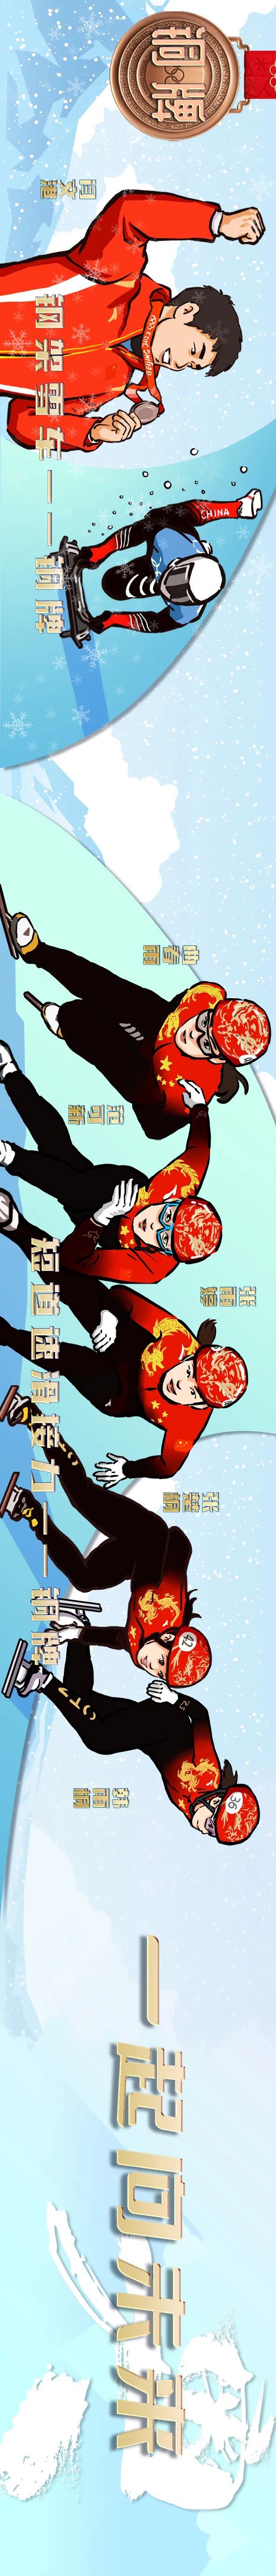 世博动漫兰珍妮担纲创意和主绘，中国冬奥军团系列漫像“全家福”闪亮登场